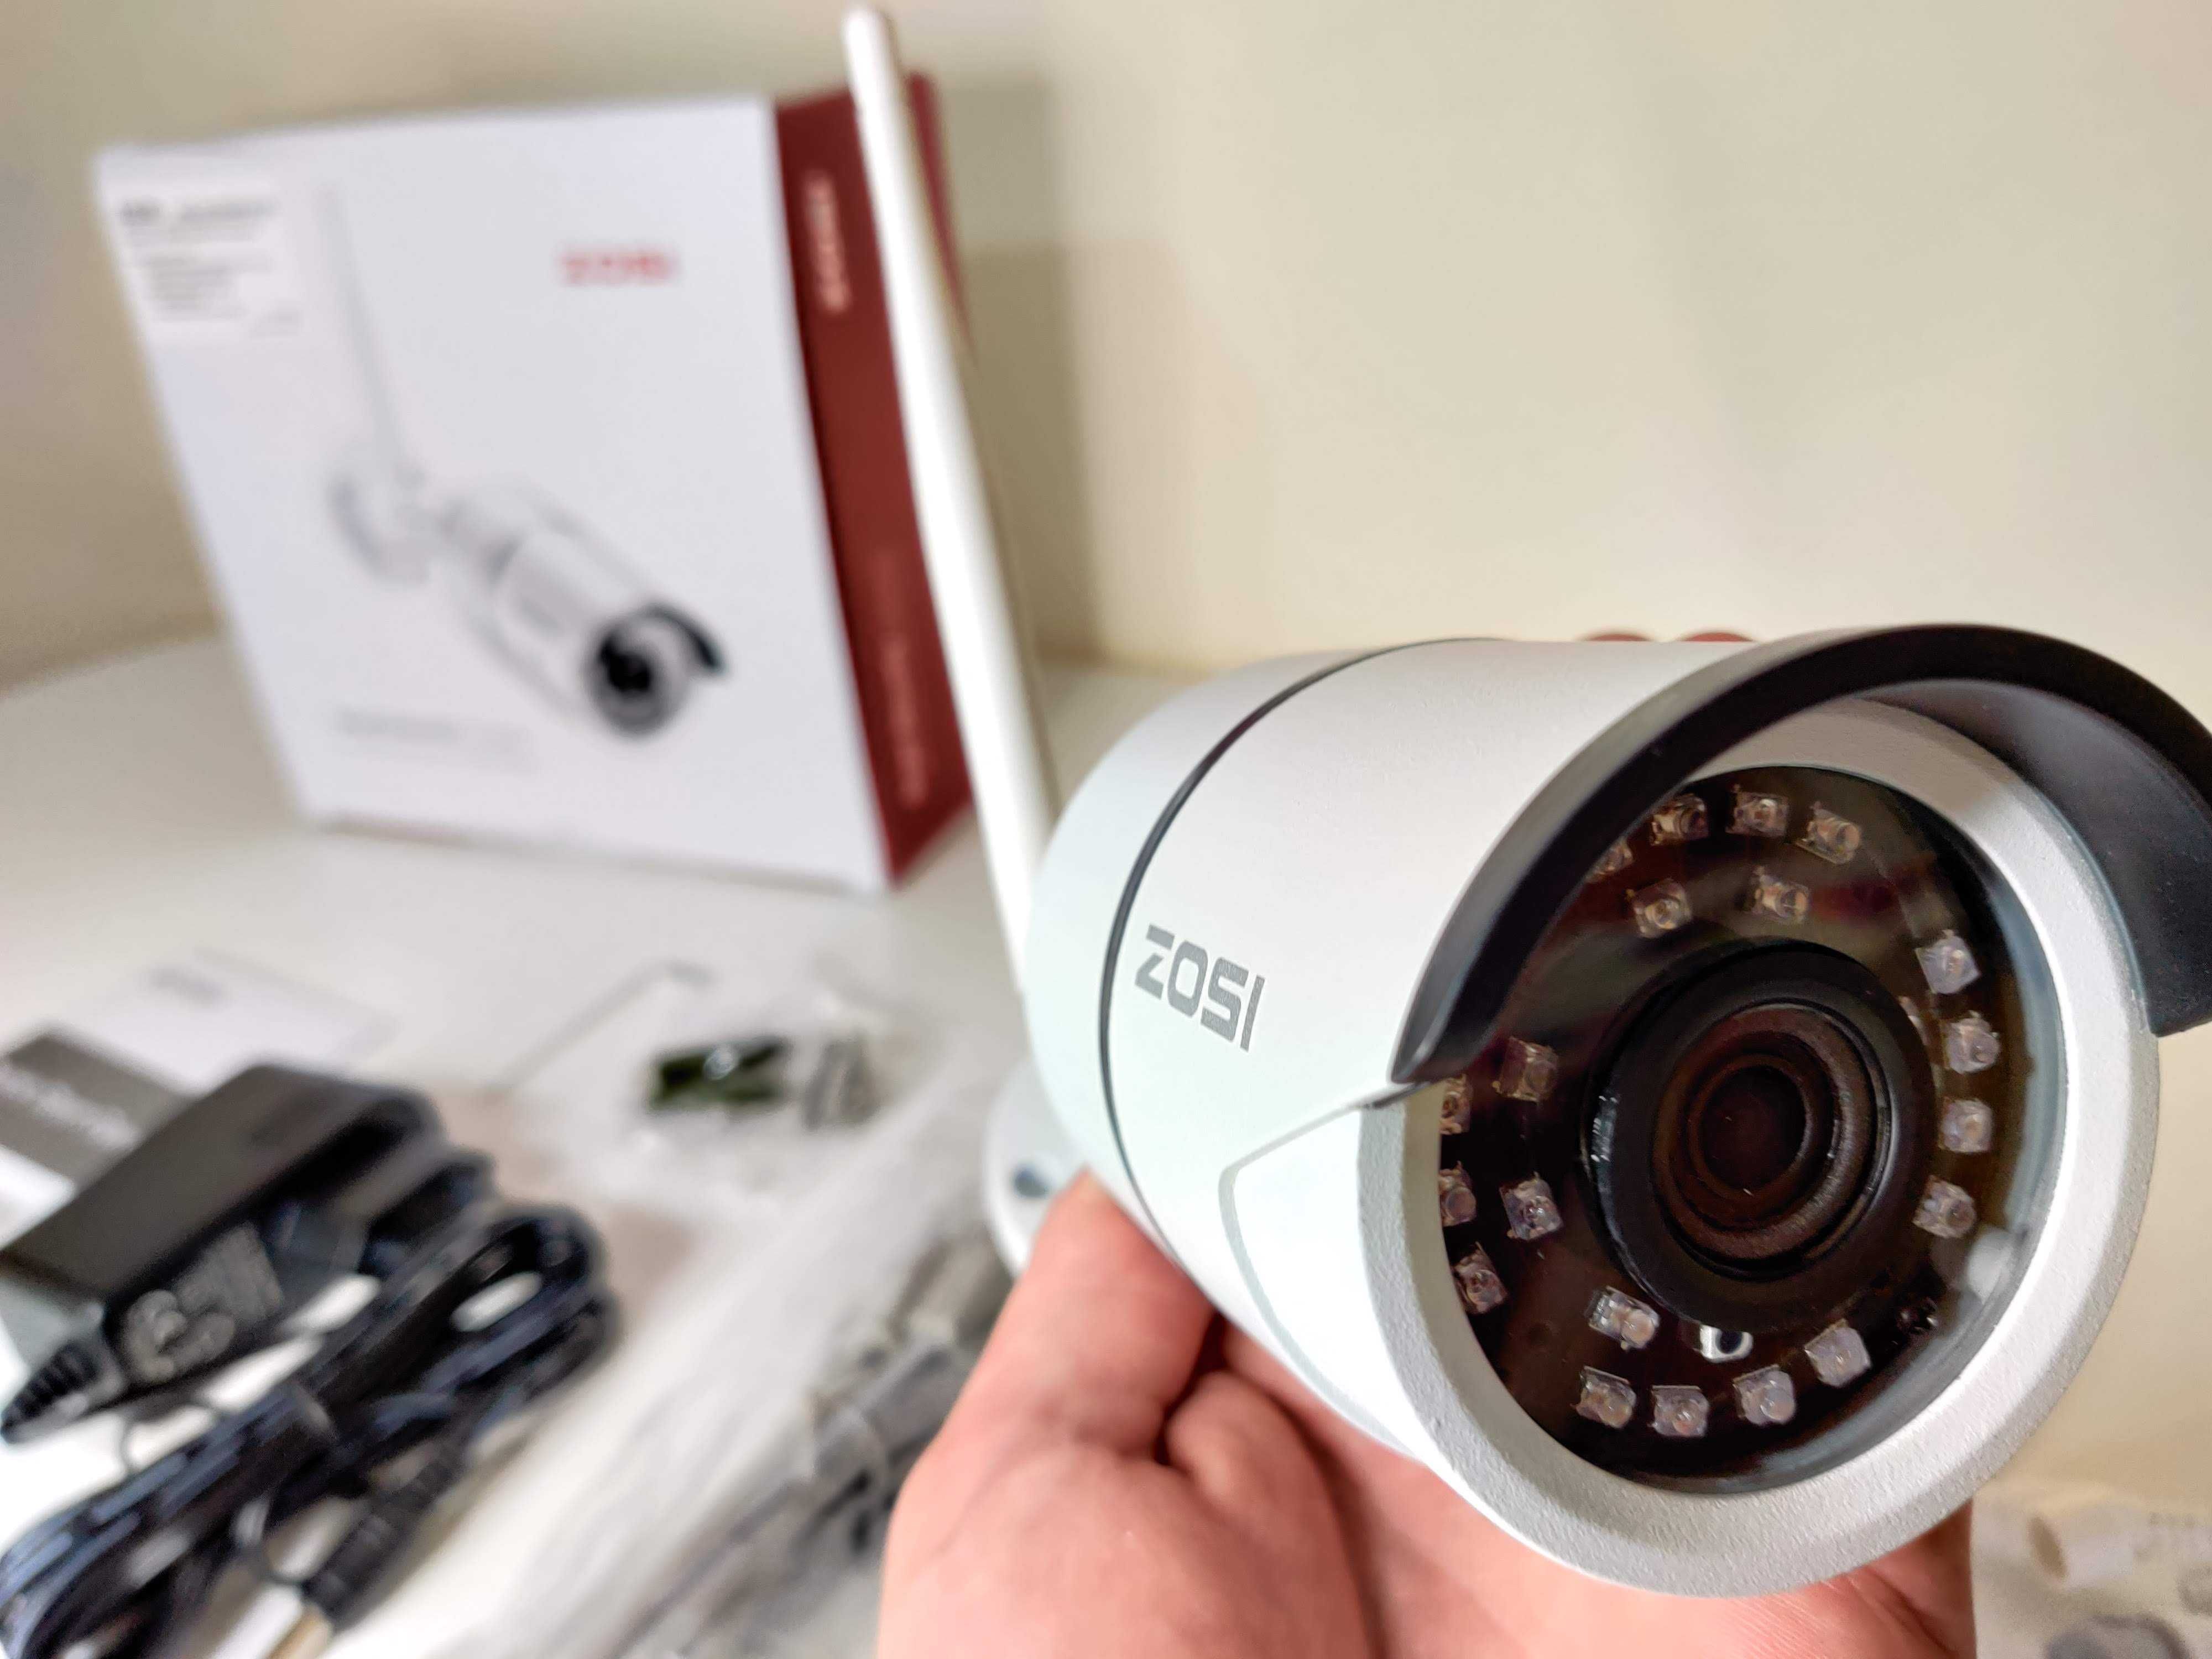 [NOVO] Câmera Vigilância WIFI Exterior ZOSI • 1080P • APP Deteção Mov.